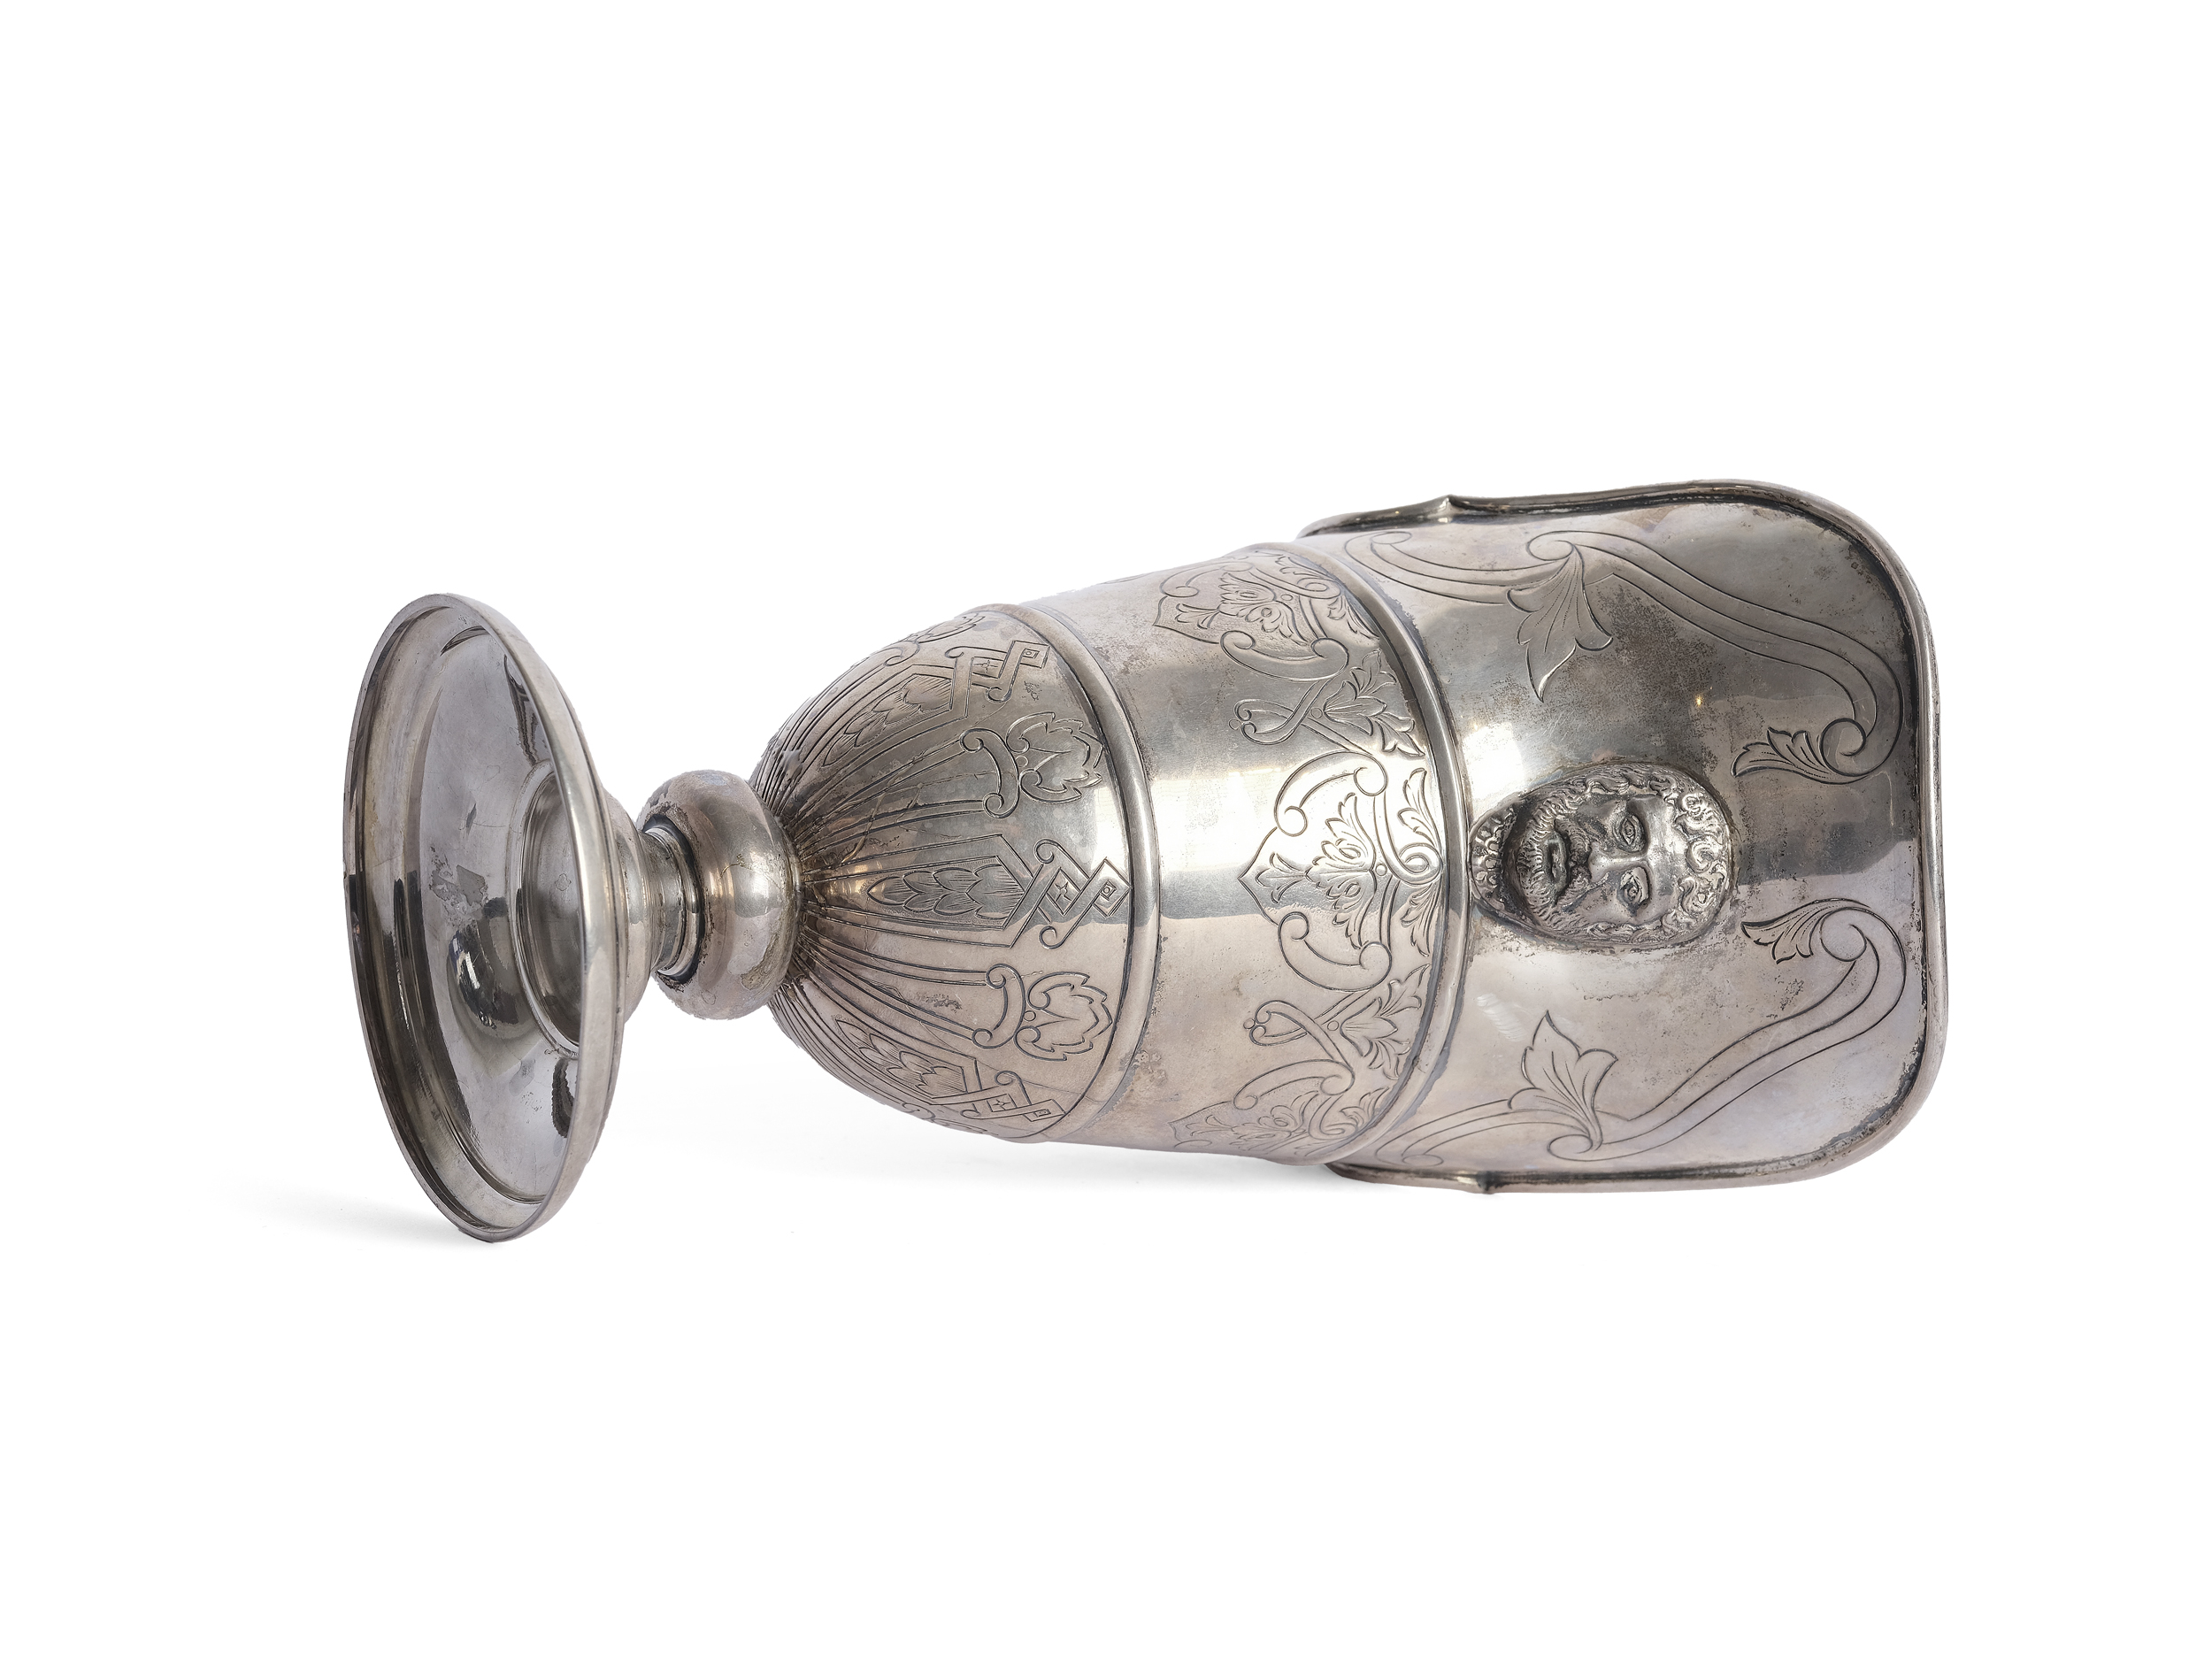 Silver jug - Image 4 of 5